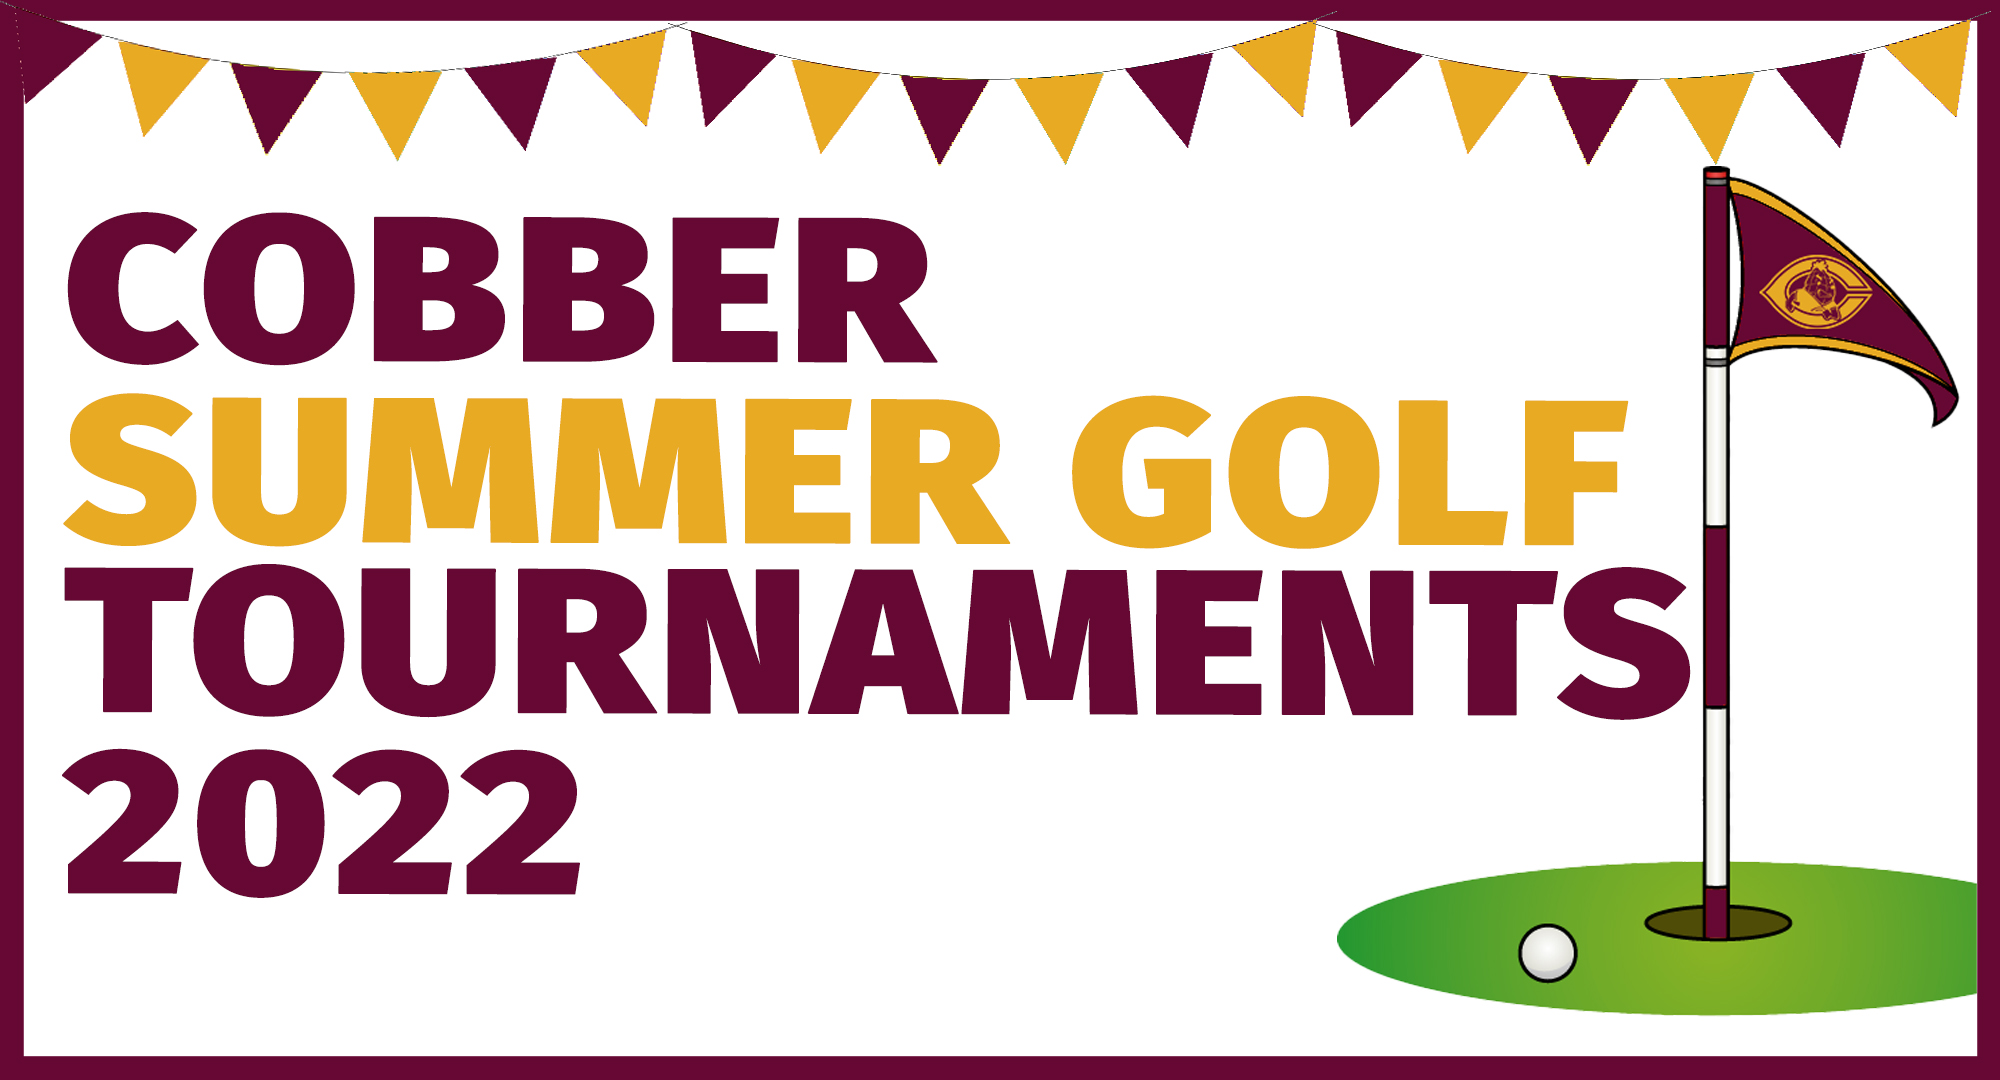 Cobber Summer Golf Tournaments 2022